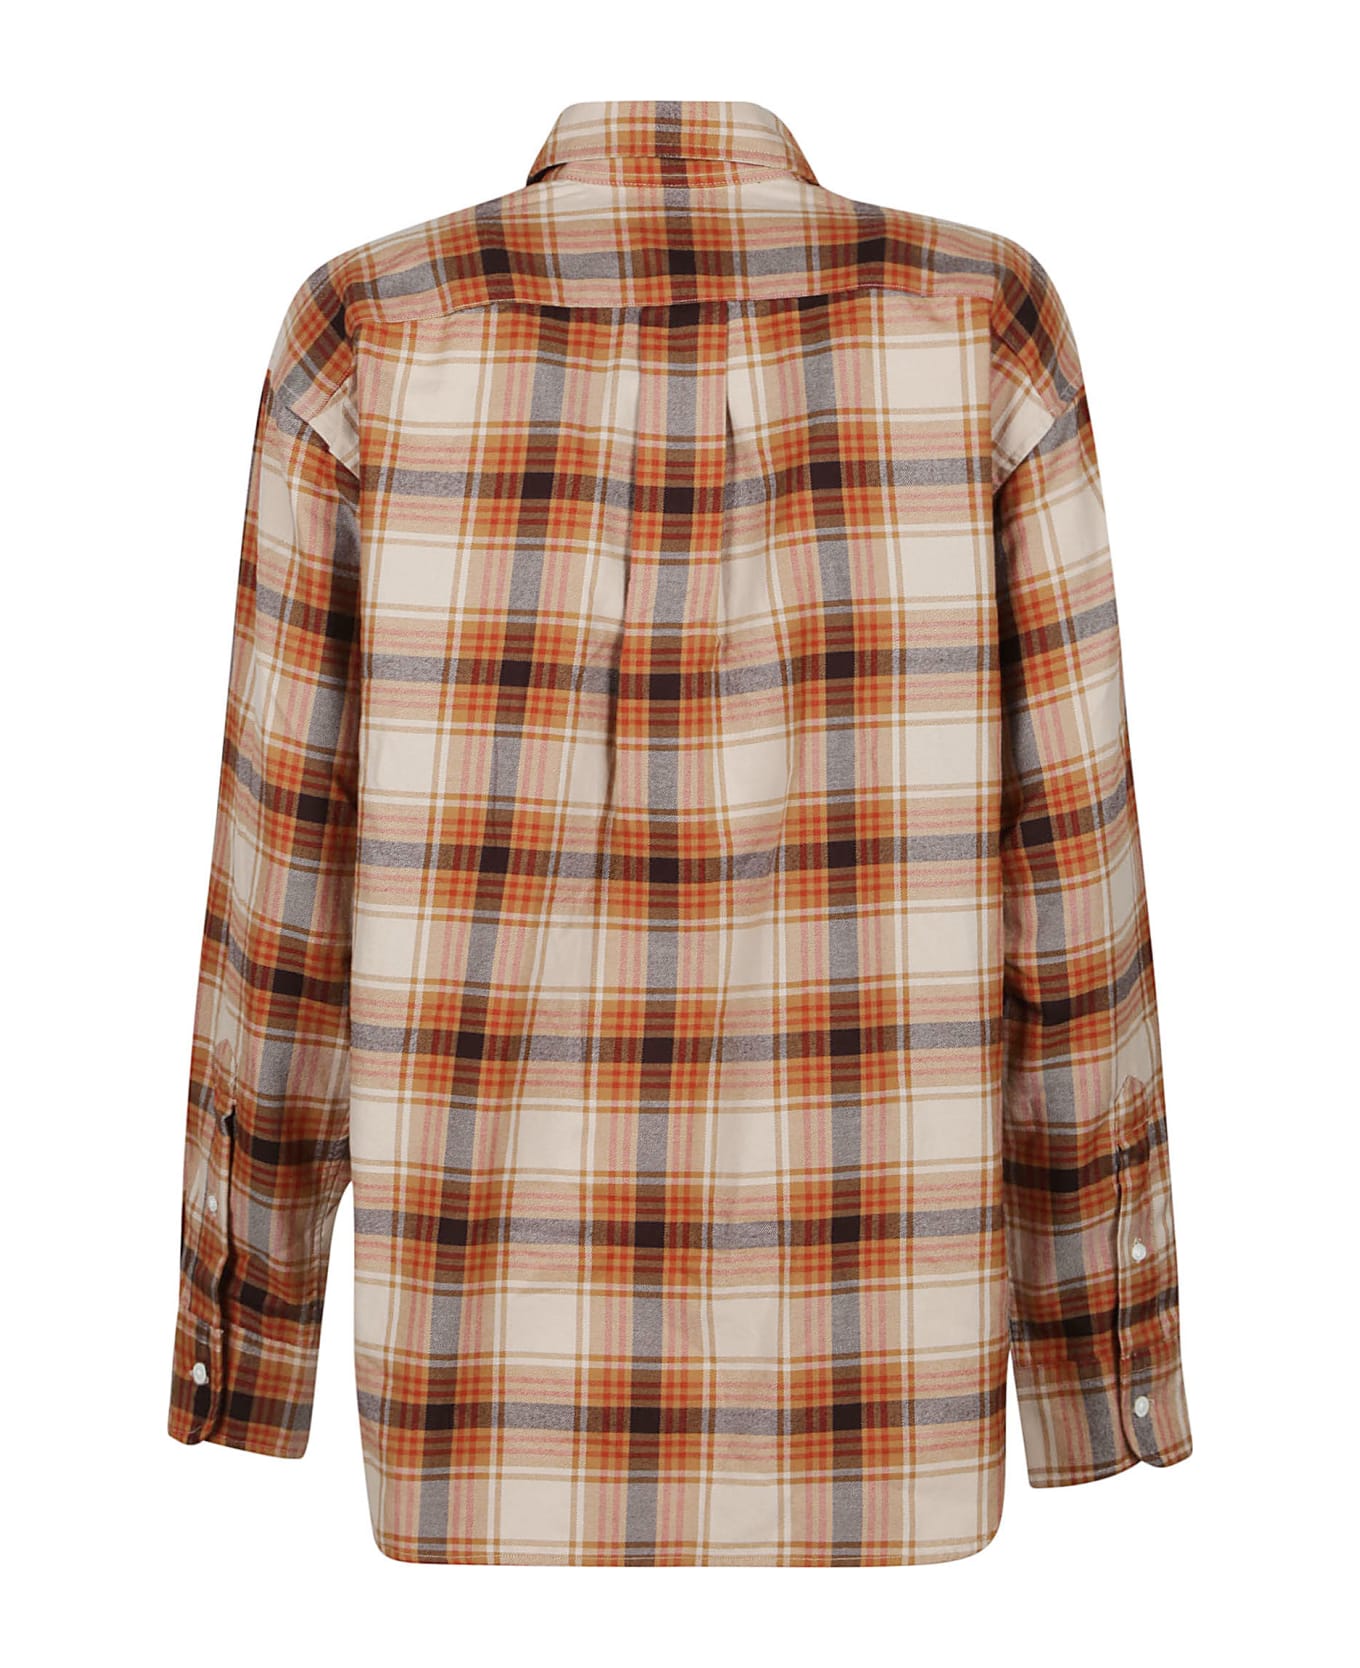 Ralph Lauren Long Sleeve Button Front Shirt - Tan Multi Plaid